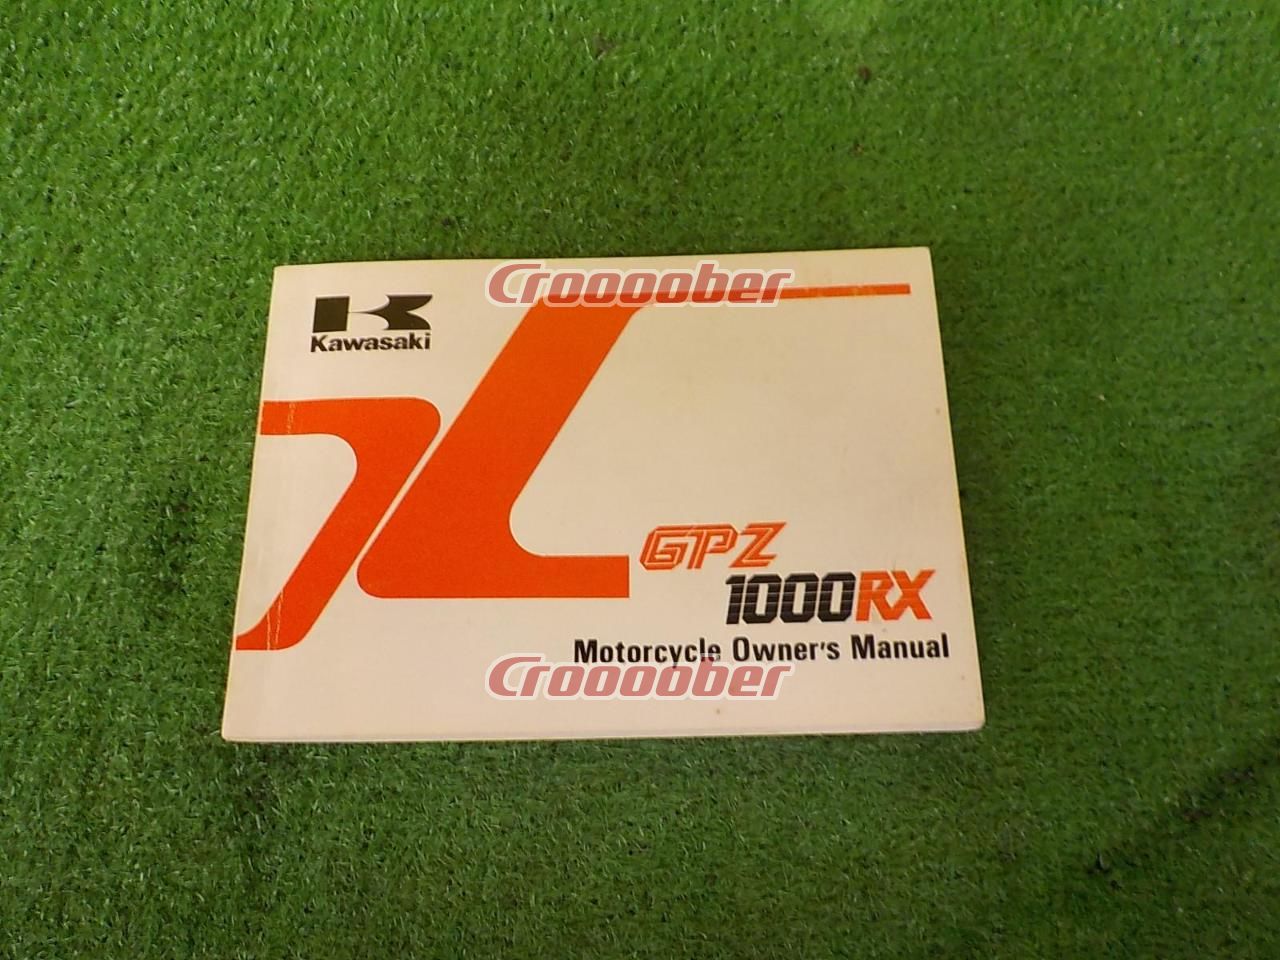 Kawasaki Gpz 1000 Rx Manual English Download